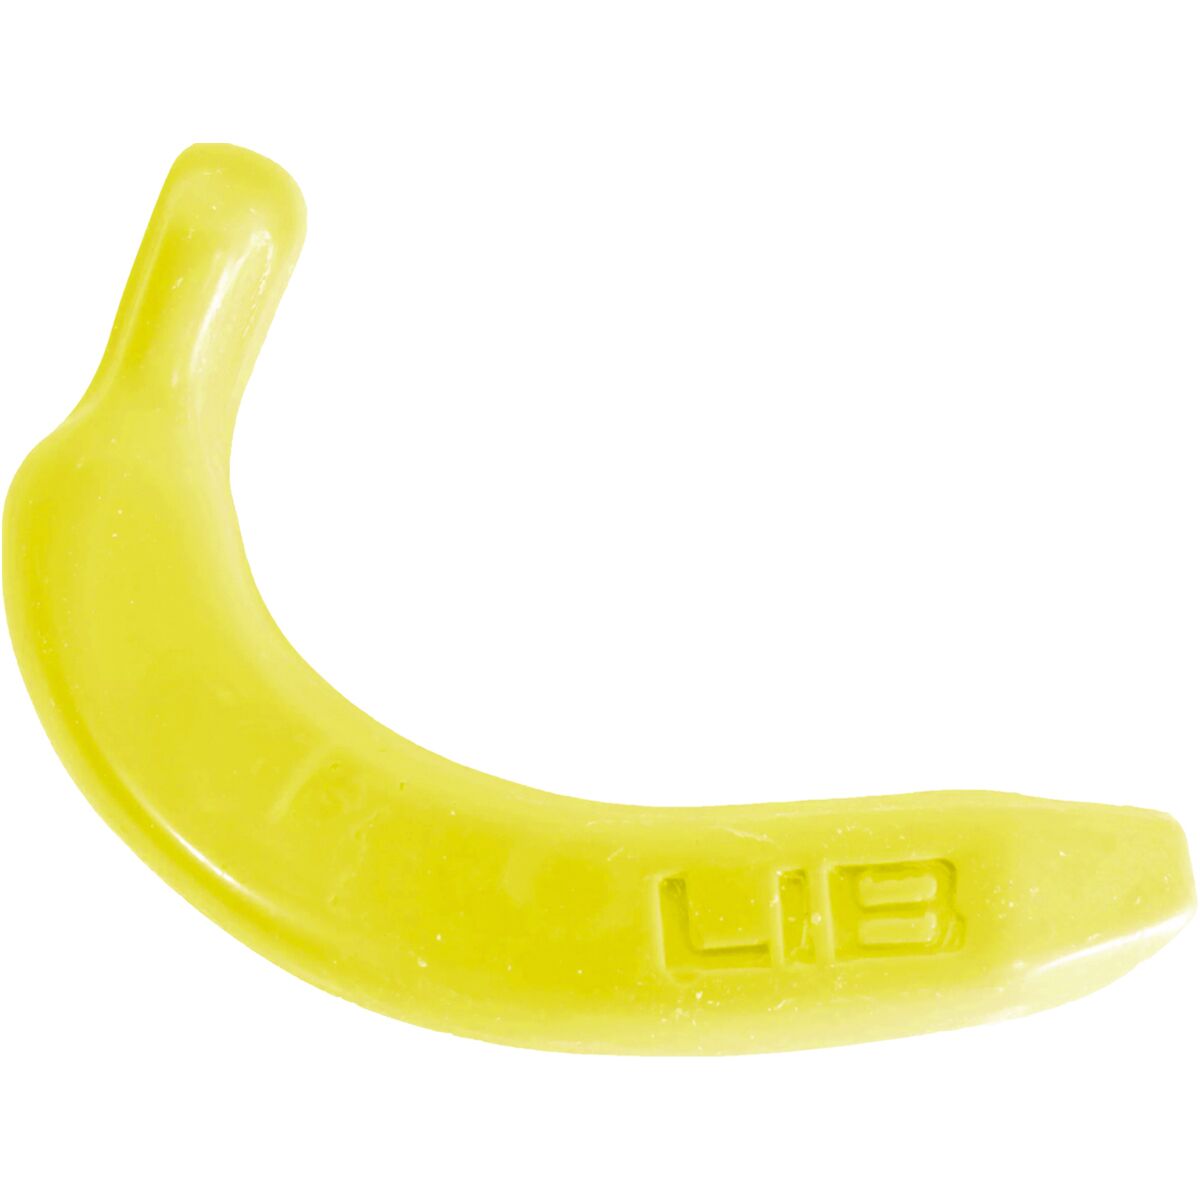 Lib Technologies Banana Wax